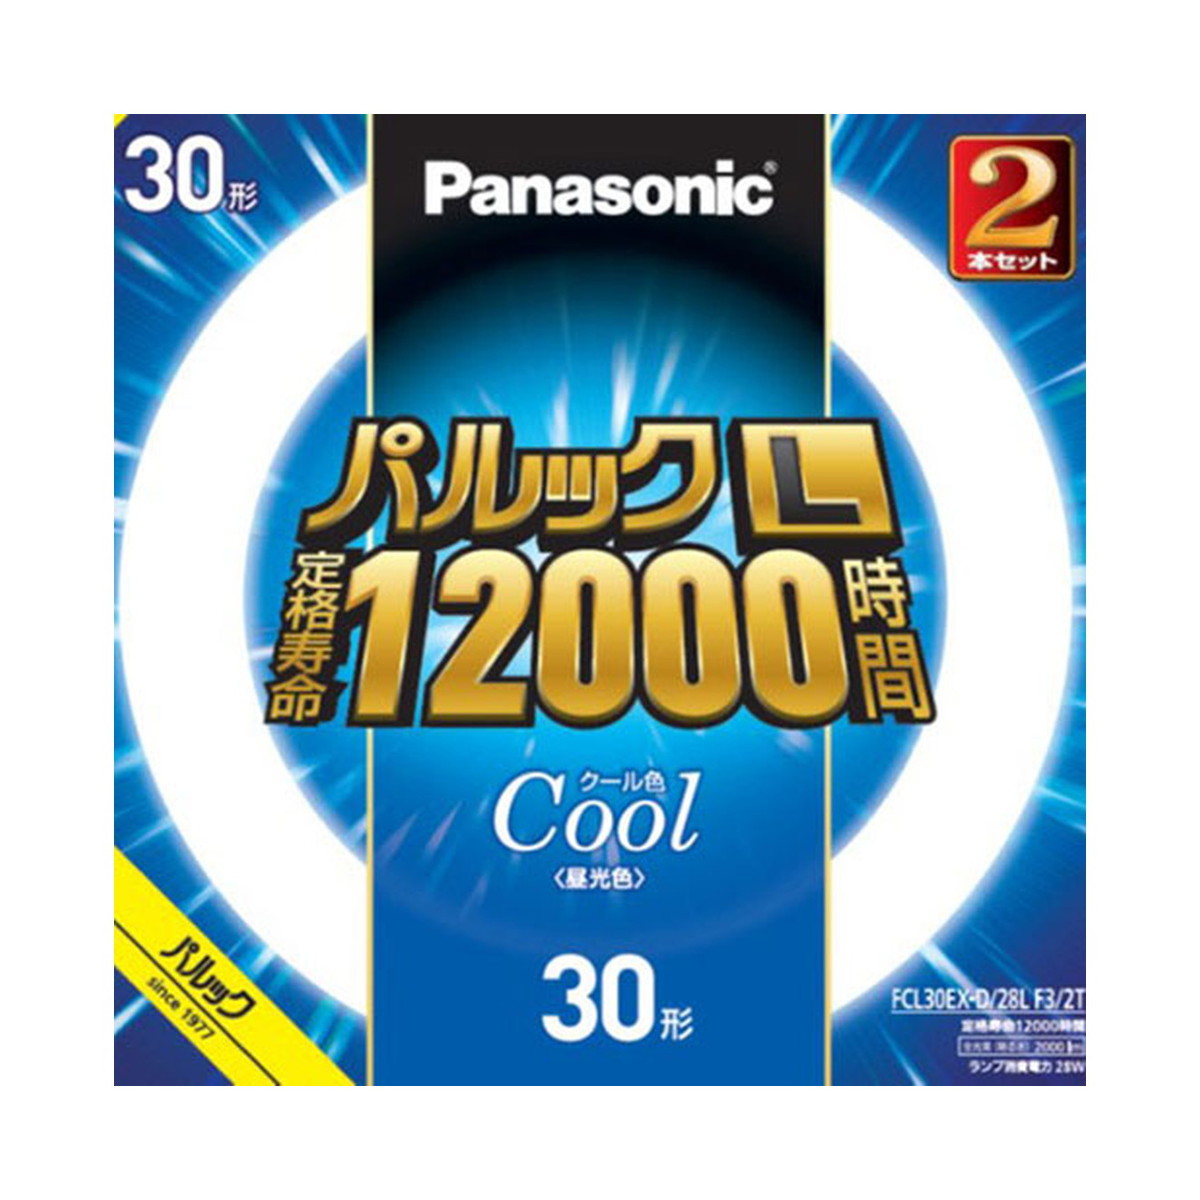 最大40%OFFクーポンパナソニック Panasonic FCL30EXD28LF32T パルック L 蛍光灯  30形 クール色 2本セット